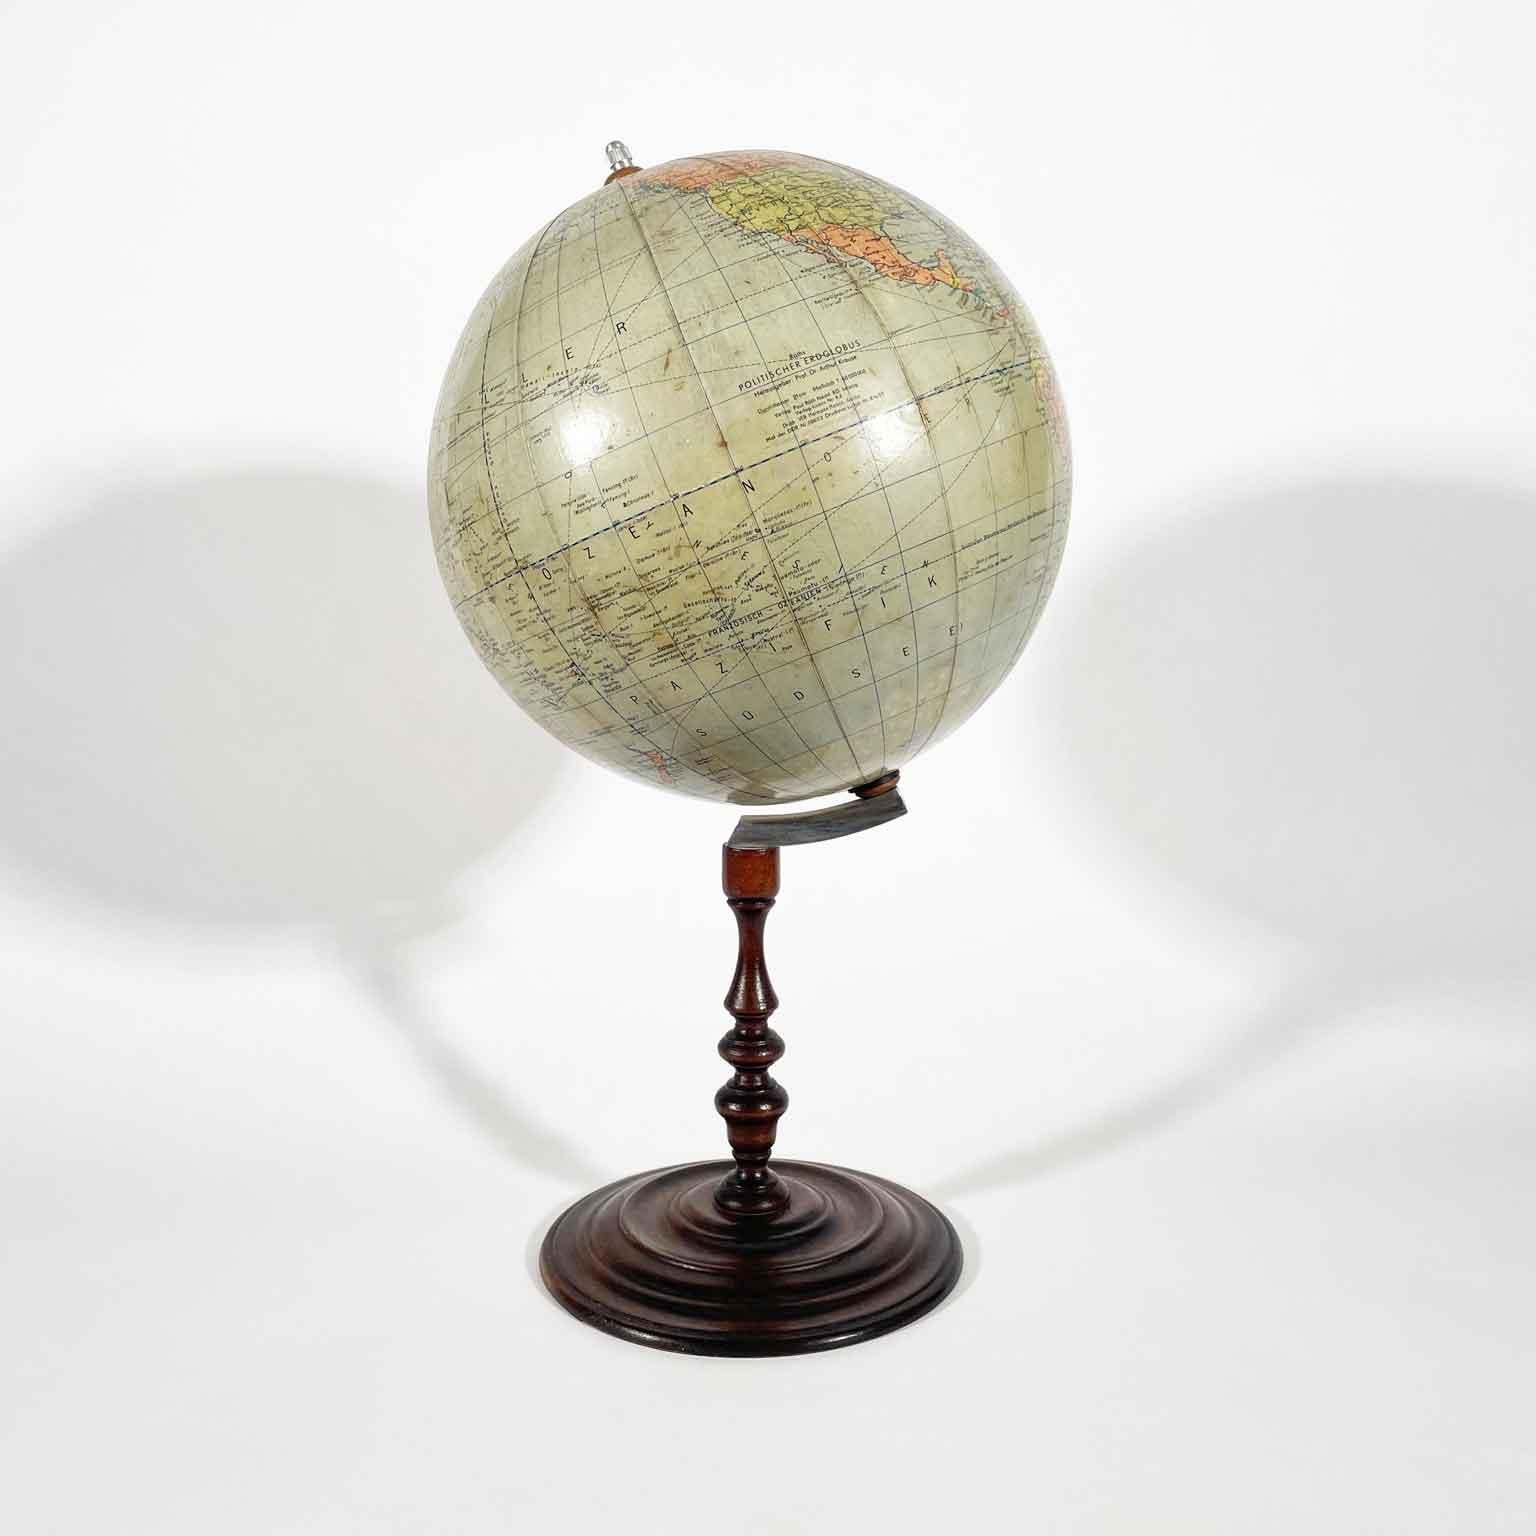 Mappamondo da tavolo tedesco, globo terrestre Politico Disegnato Da Arthur Krause è un globo politico del diametro di 21 centimentri  di diametro, realizzato dalla ditta Paul Räths, Nachf. KG, Leipzig (Lipsia),  DDR (Germania dell’Est) e disegnato